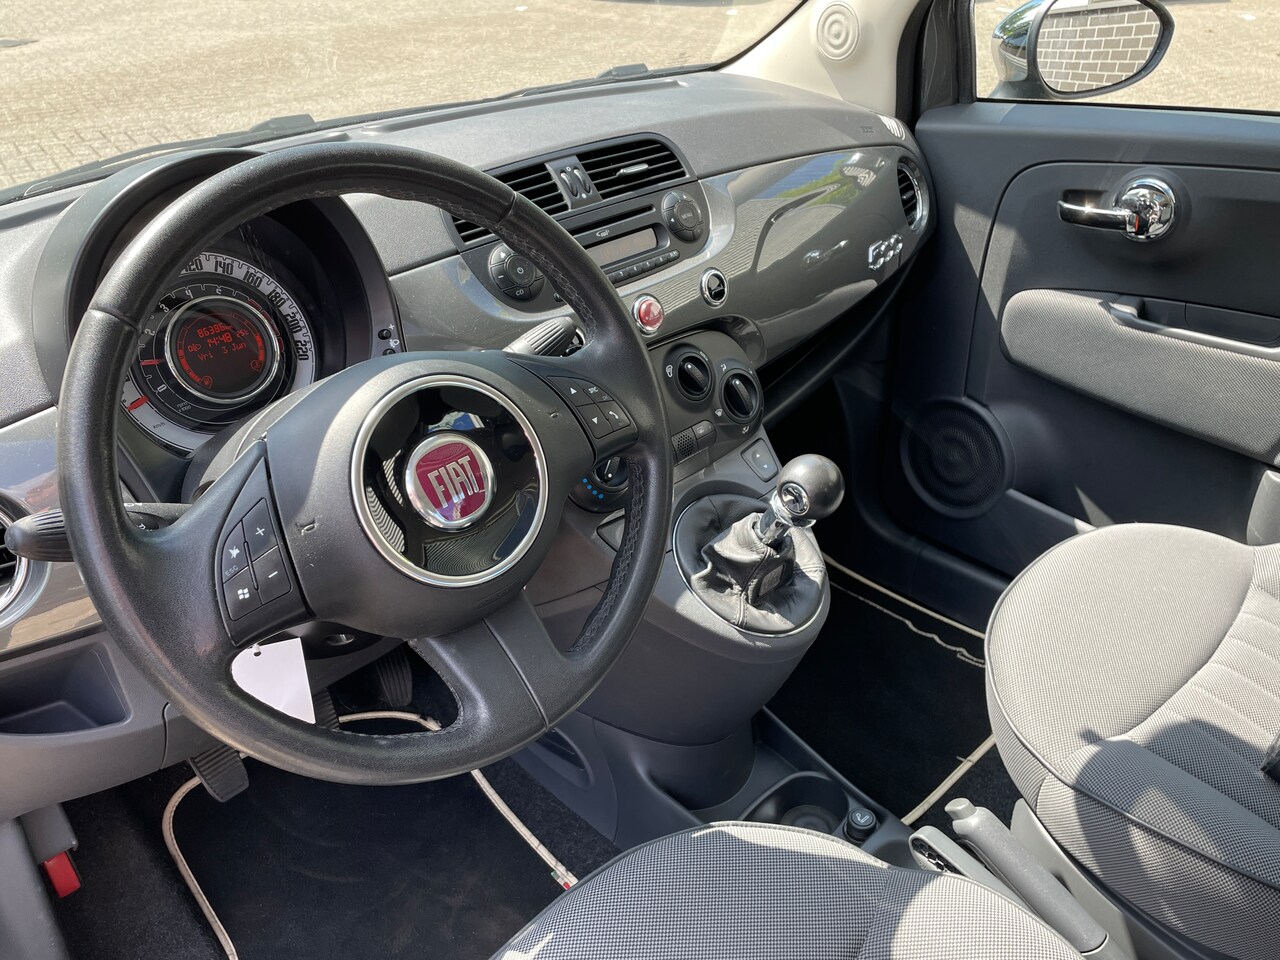 Fiat 500 - 0.9 TwinAir Lounge Turbo 85pk. Panorama. Airco. Netjes onderhouden